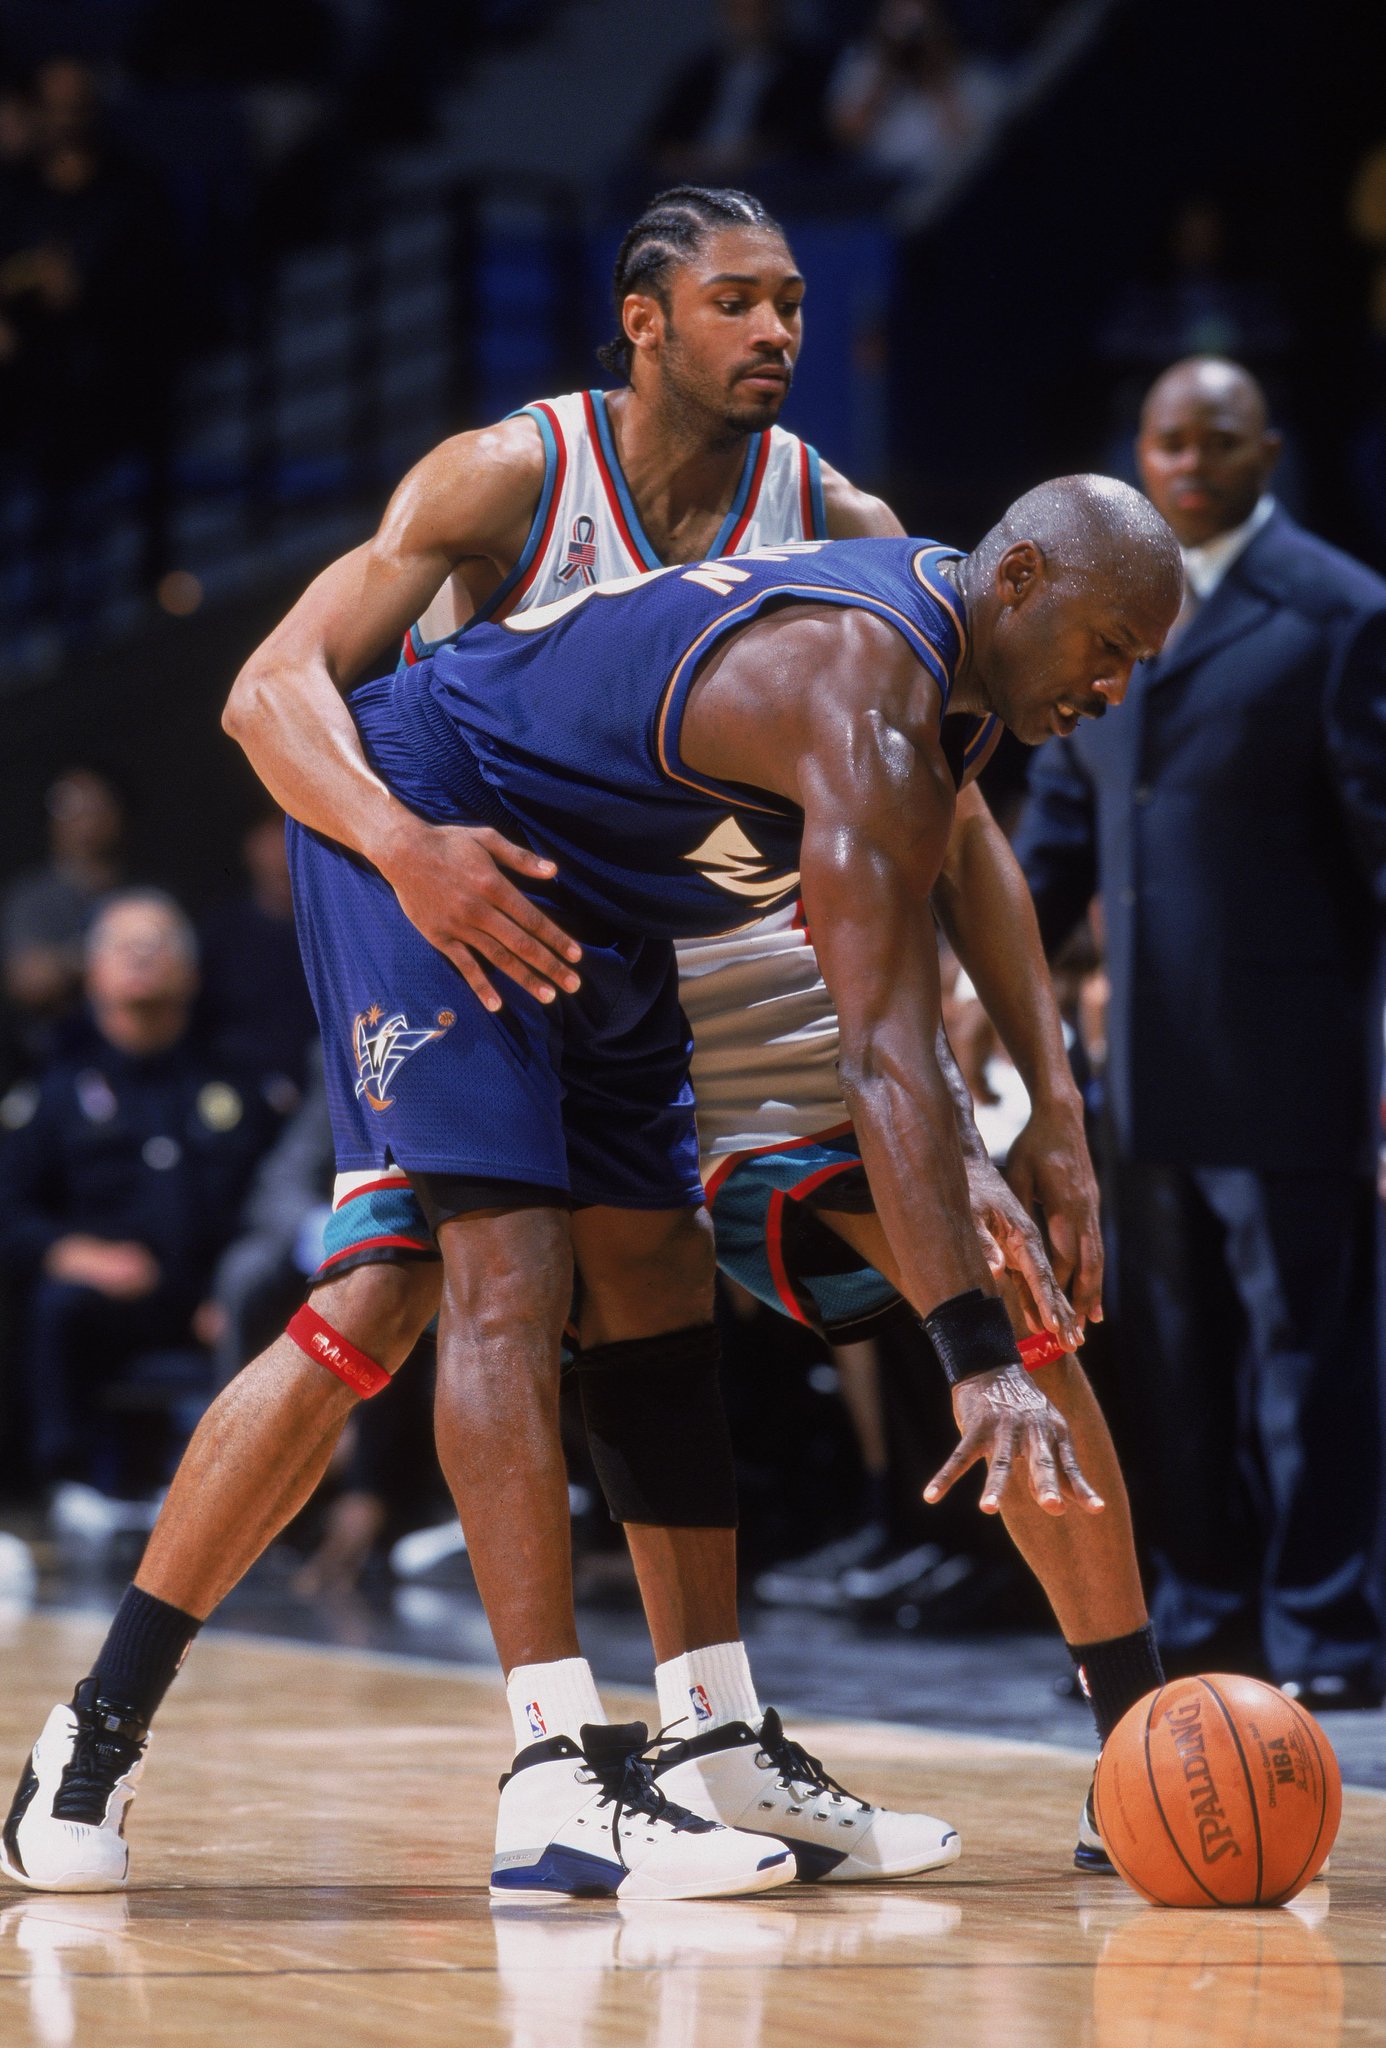 Aaron Dodson on X: October 16, 2001: Michael Jordan sitting on